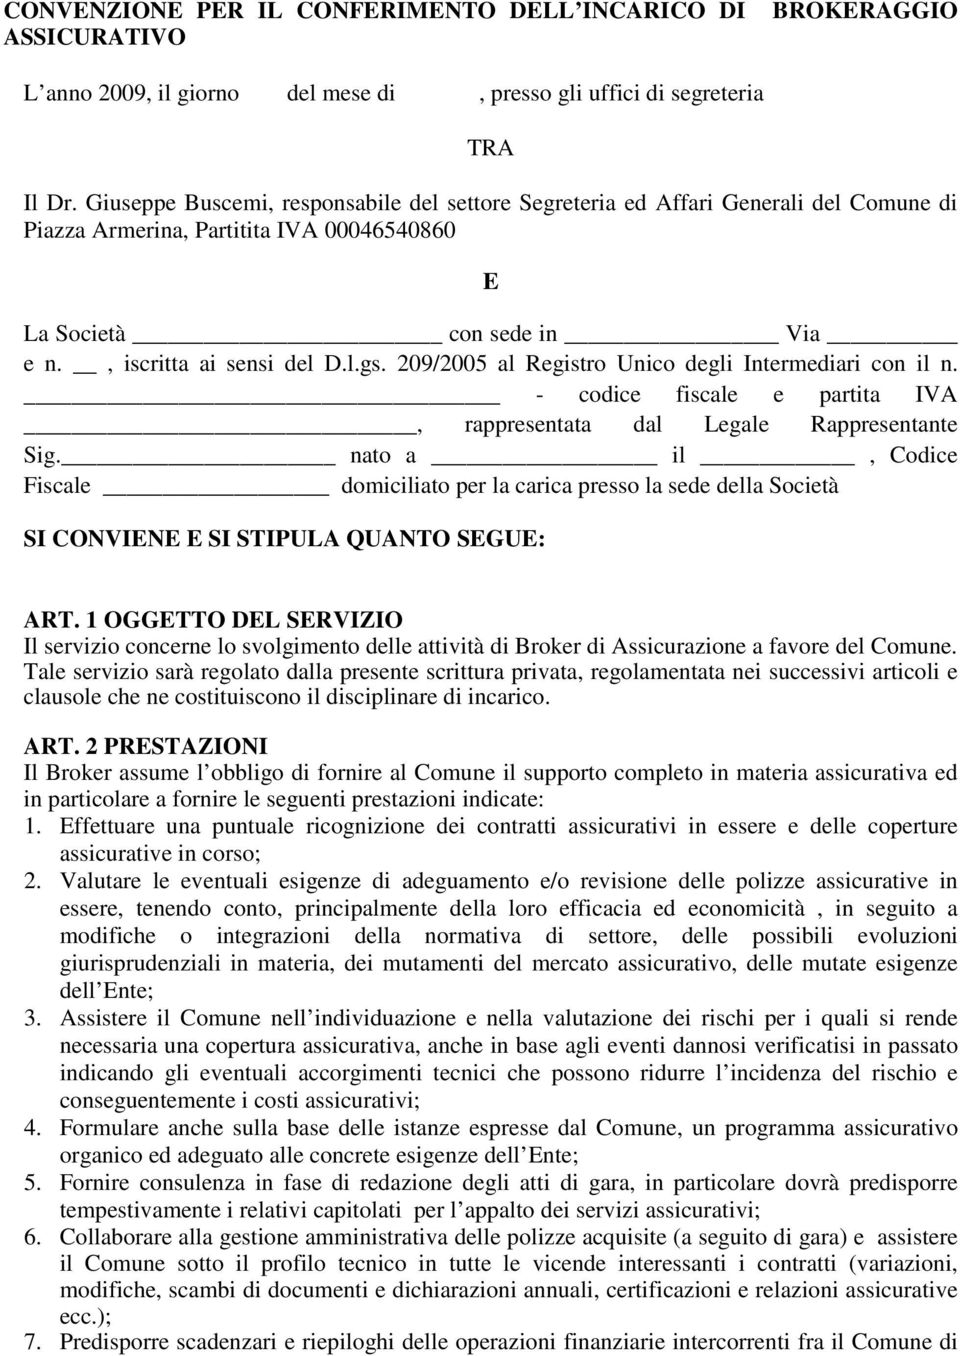 209/2005 al Registro Unico degli Intermediari con il n. - codice fiscale e partita IVA, rappresentata dal Legale Rappresentante Sig.